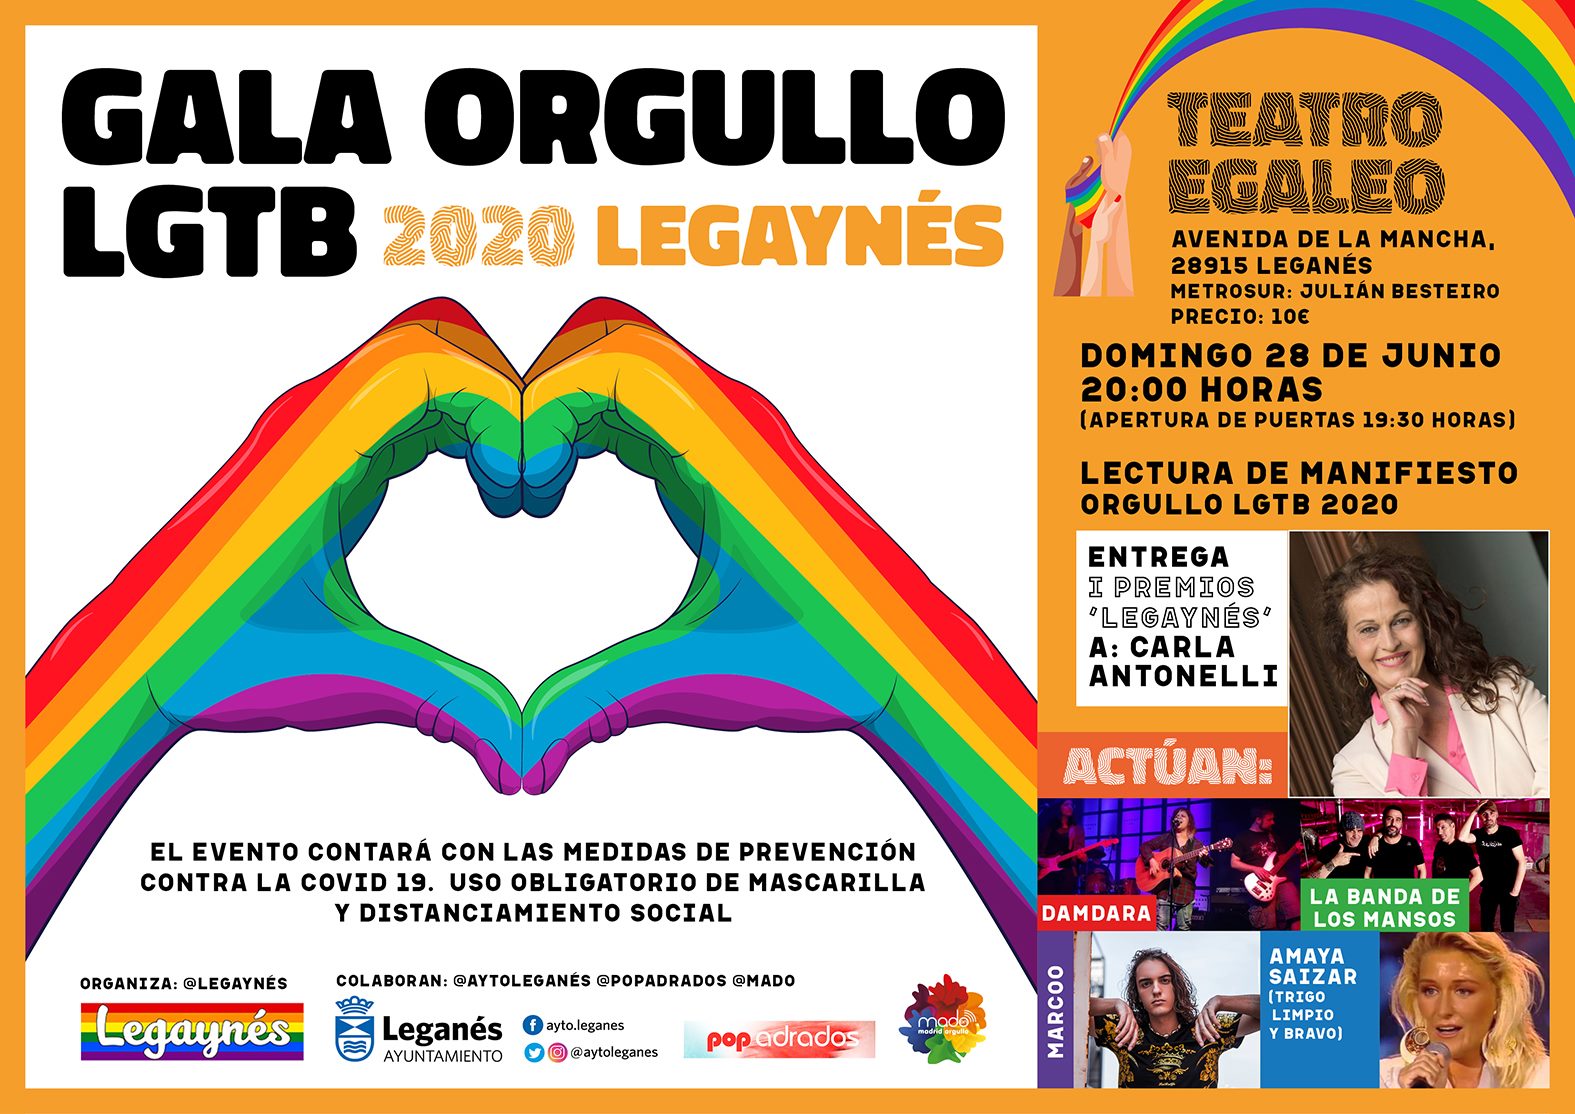 GALA ORGULLO LGTB 2020 LEGAYNÉS